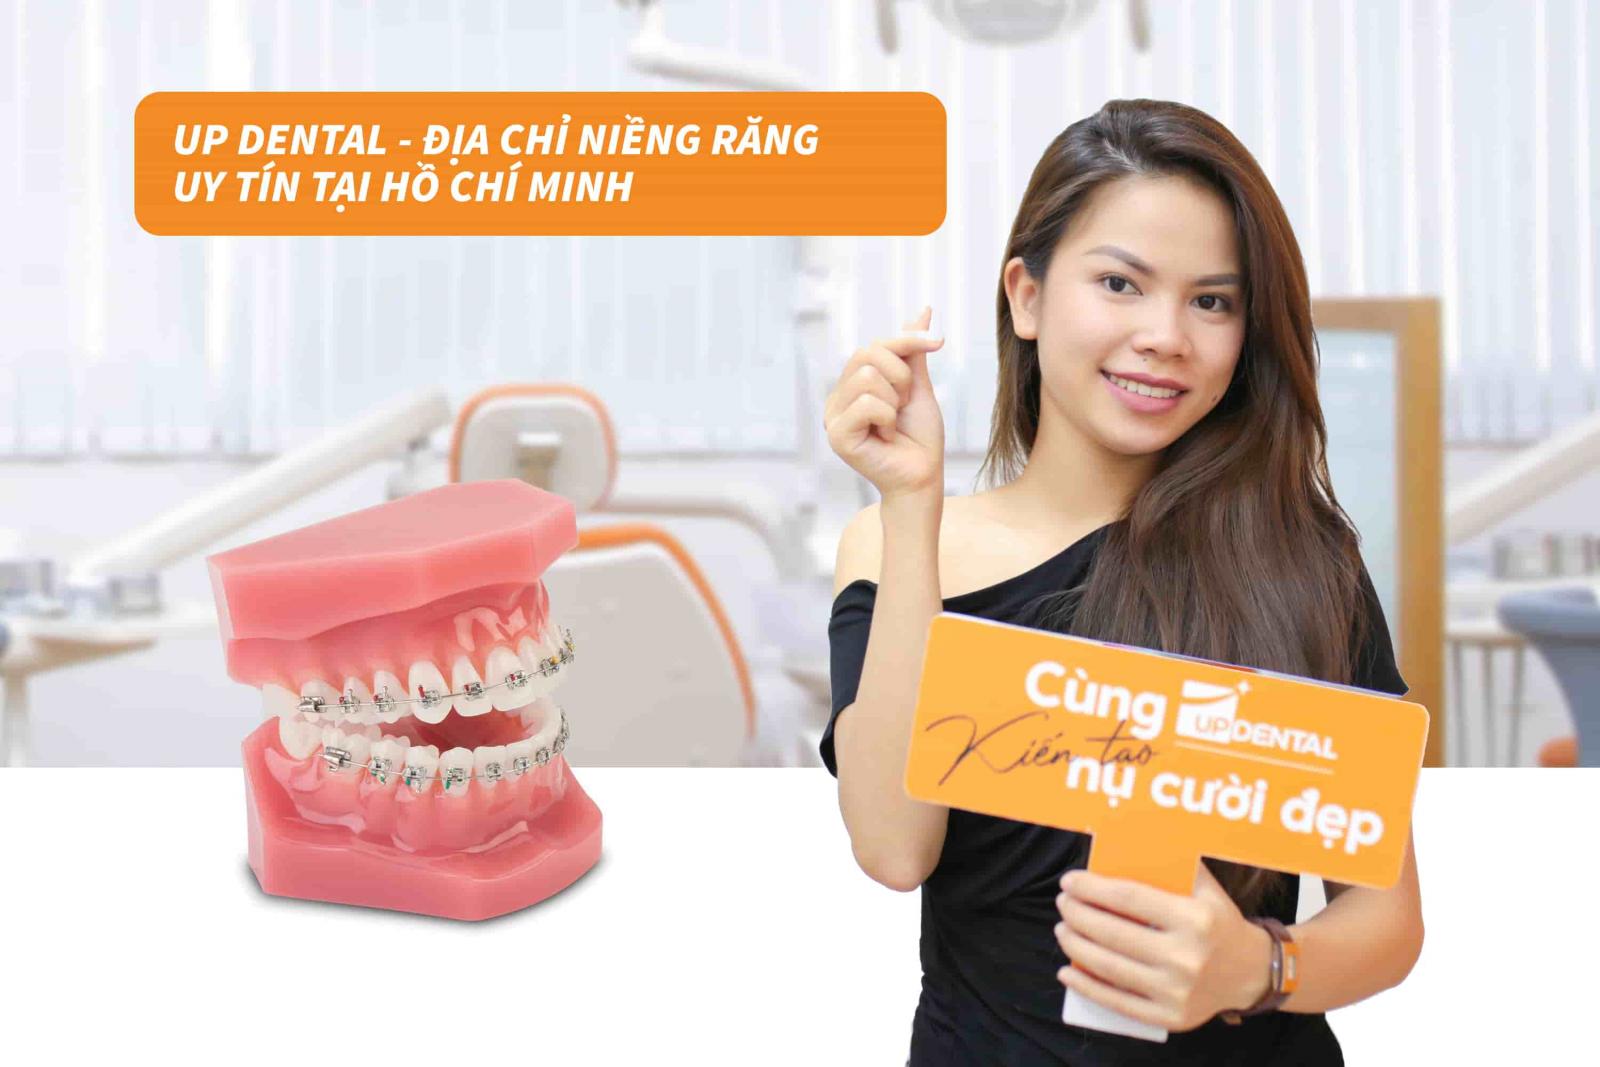 Up Dental - Địa chỉ niềng răng uy tín tại Hồ Chí Minh